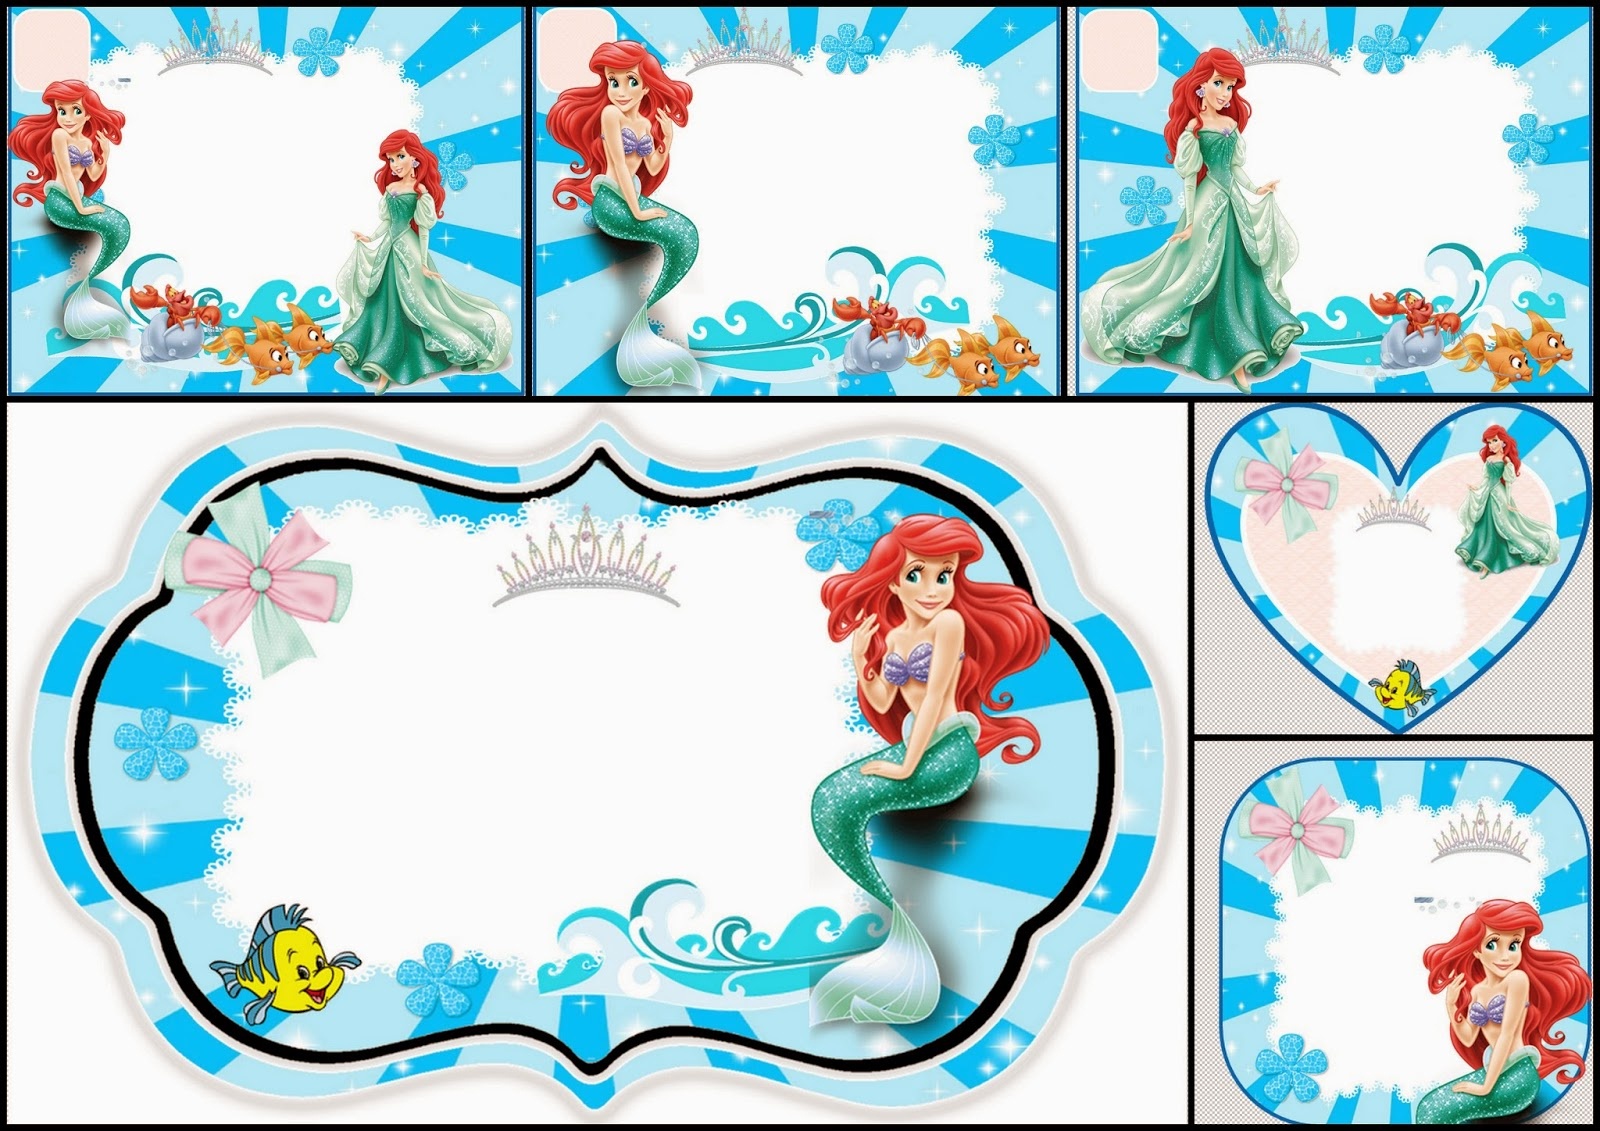 The Little Mermaid Free Printable Invitations, Cards Or Photo Frames - Free Printable Mermaid Invitations